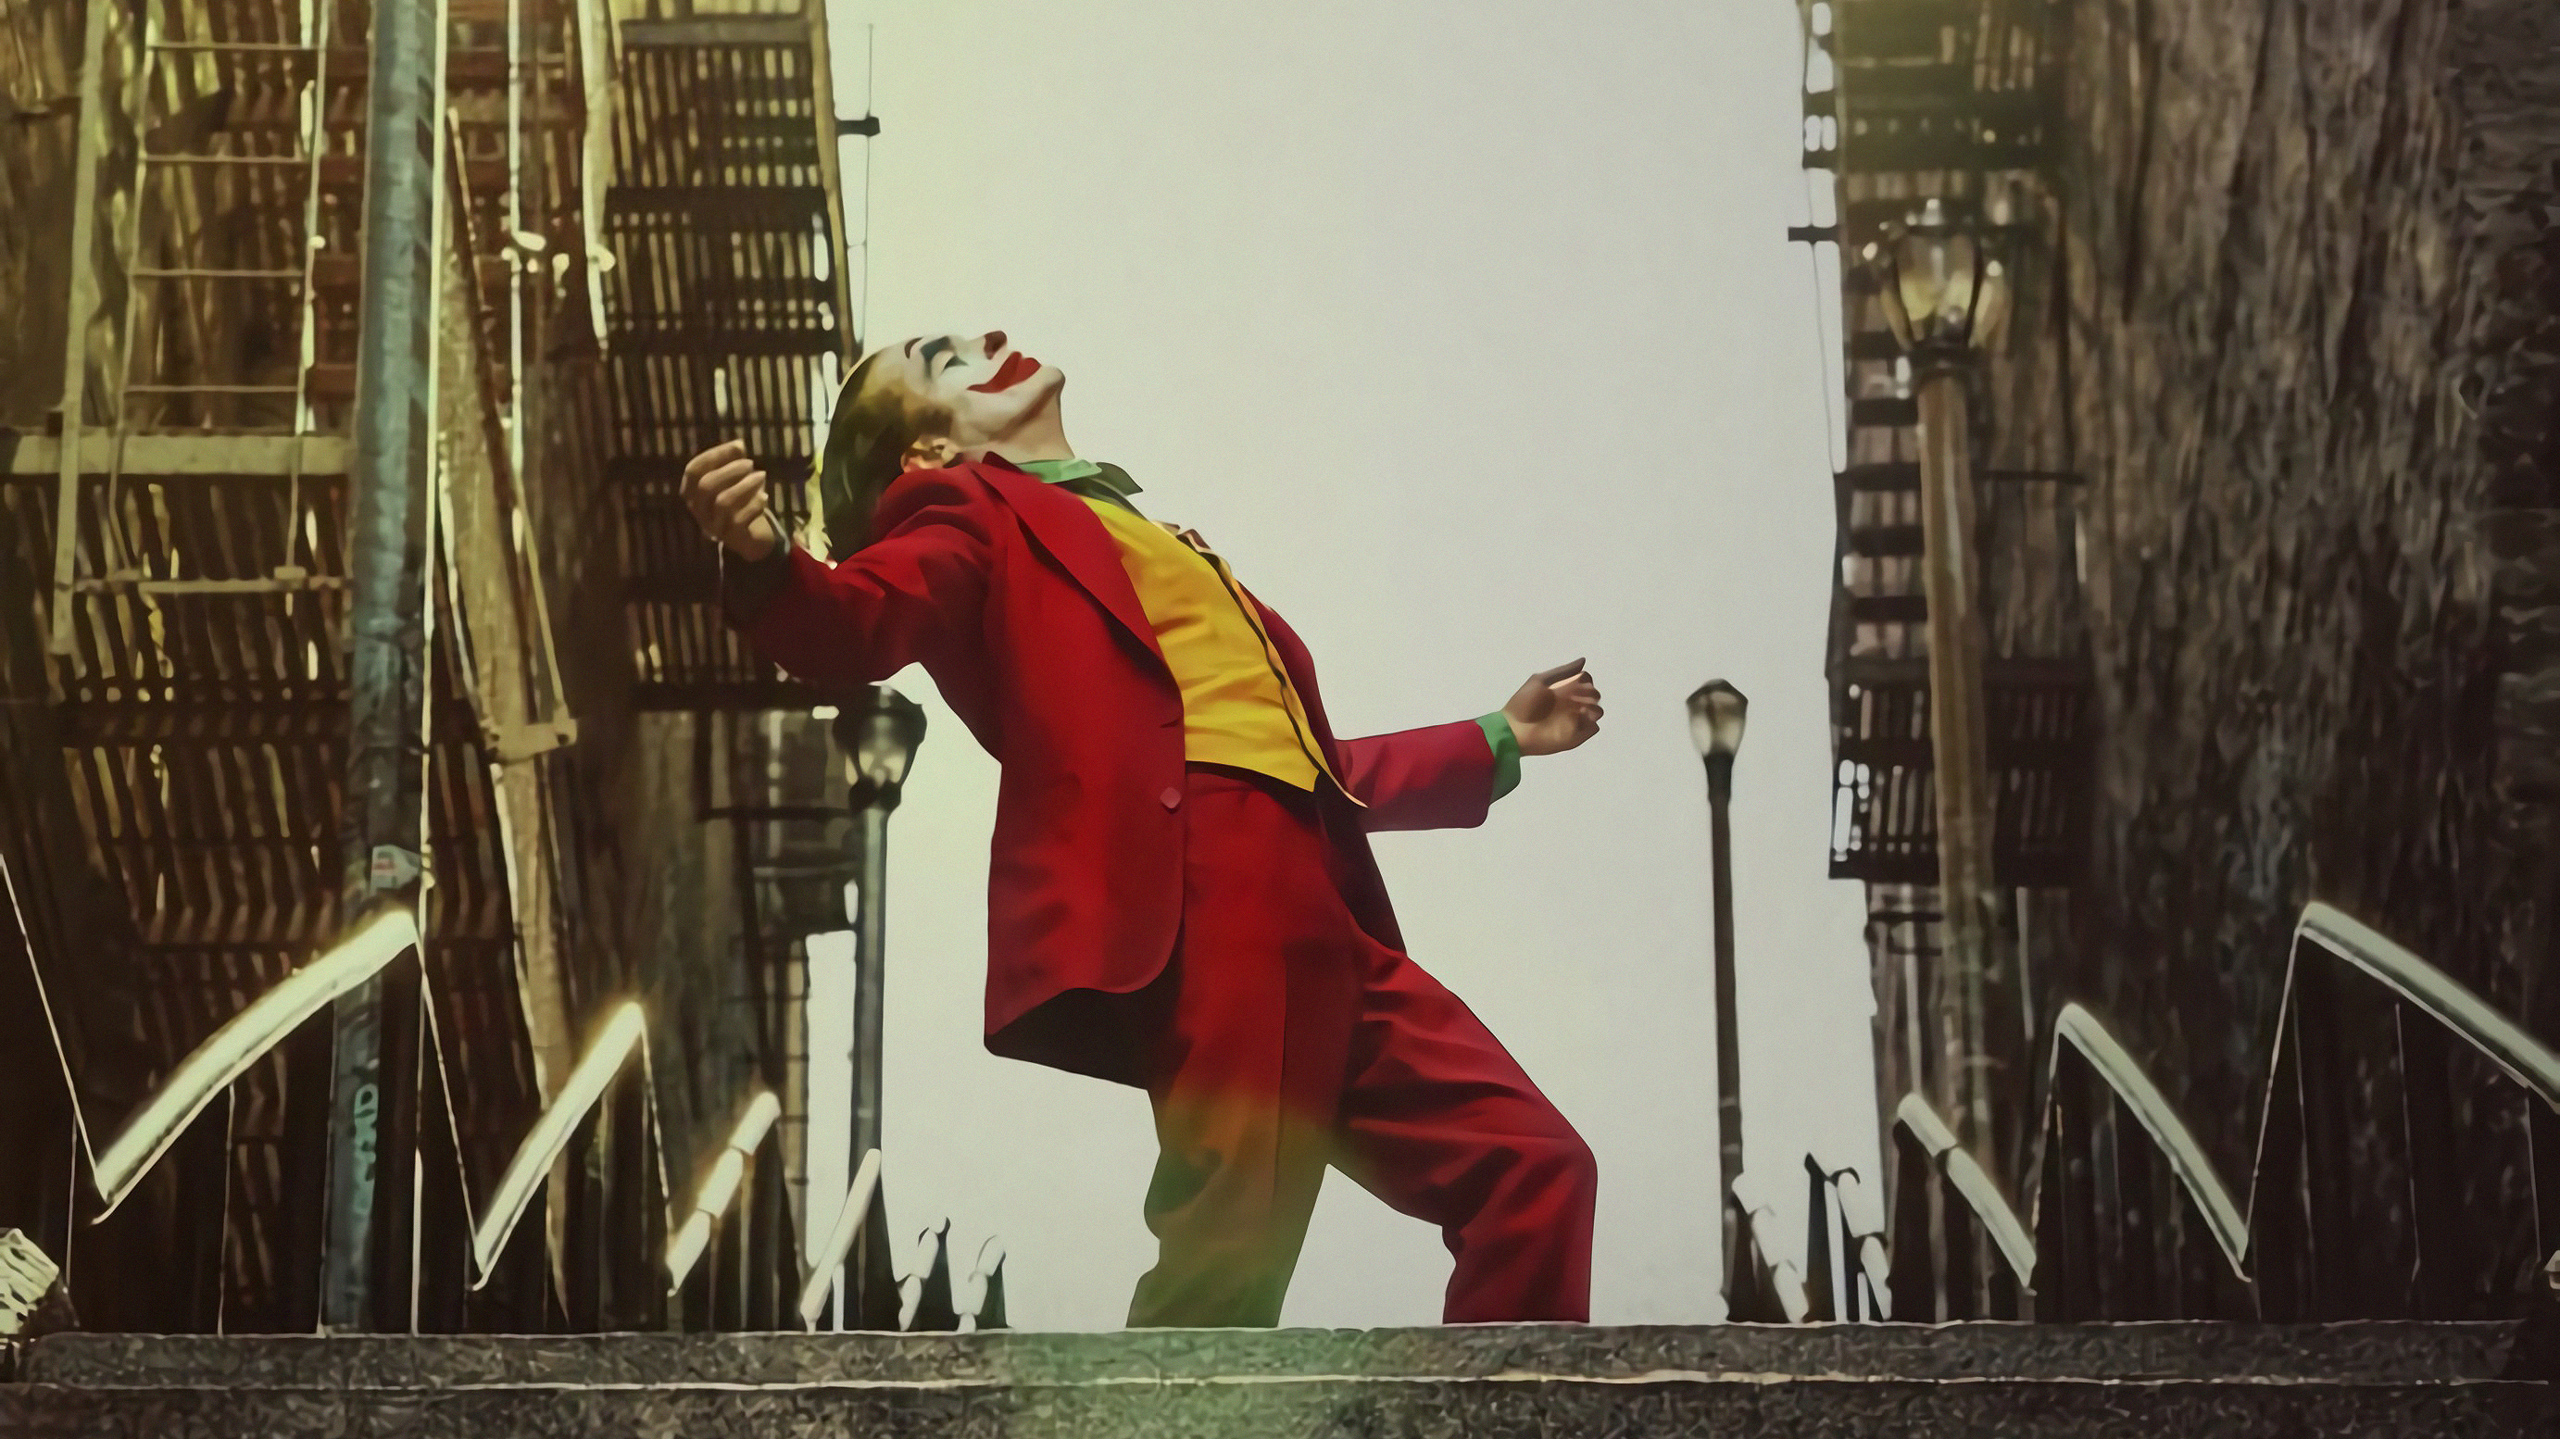 Joker 2019 Images Hd - HD Wallpaper 